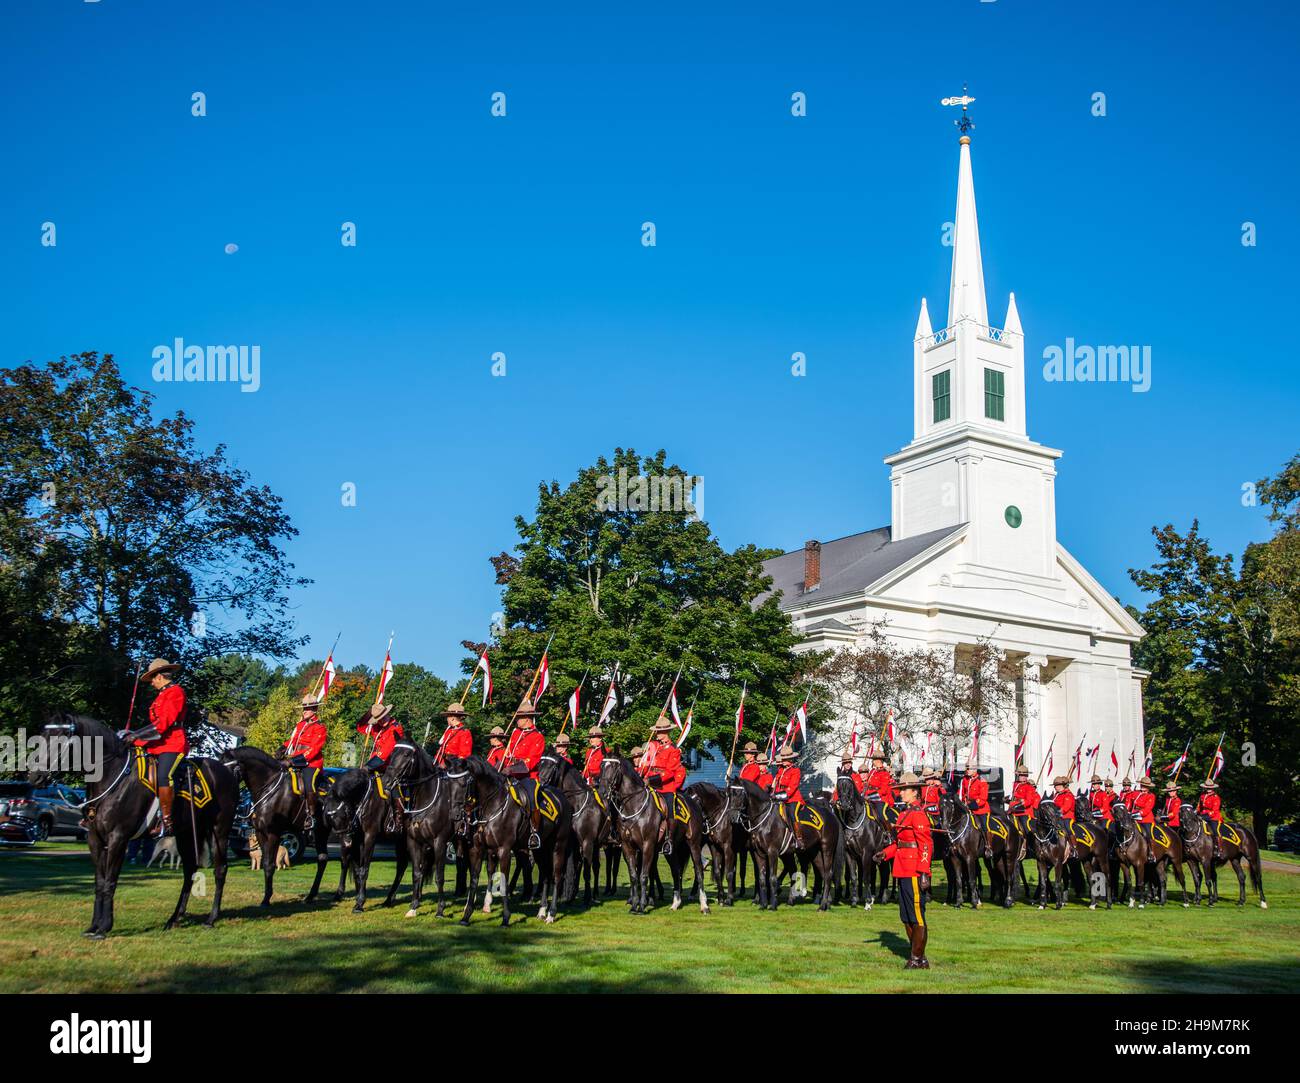 Gendarmerie royale du Canada en formation pour la parade de la foire de Topsfield, Topsfield, Massachusetts, États-Unis Banque D'Images